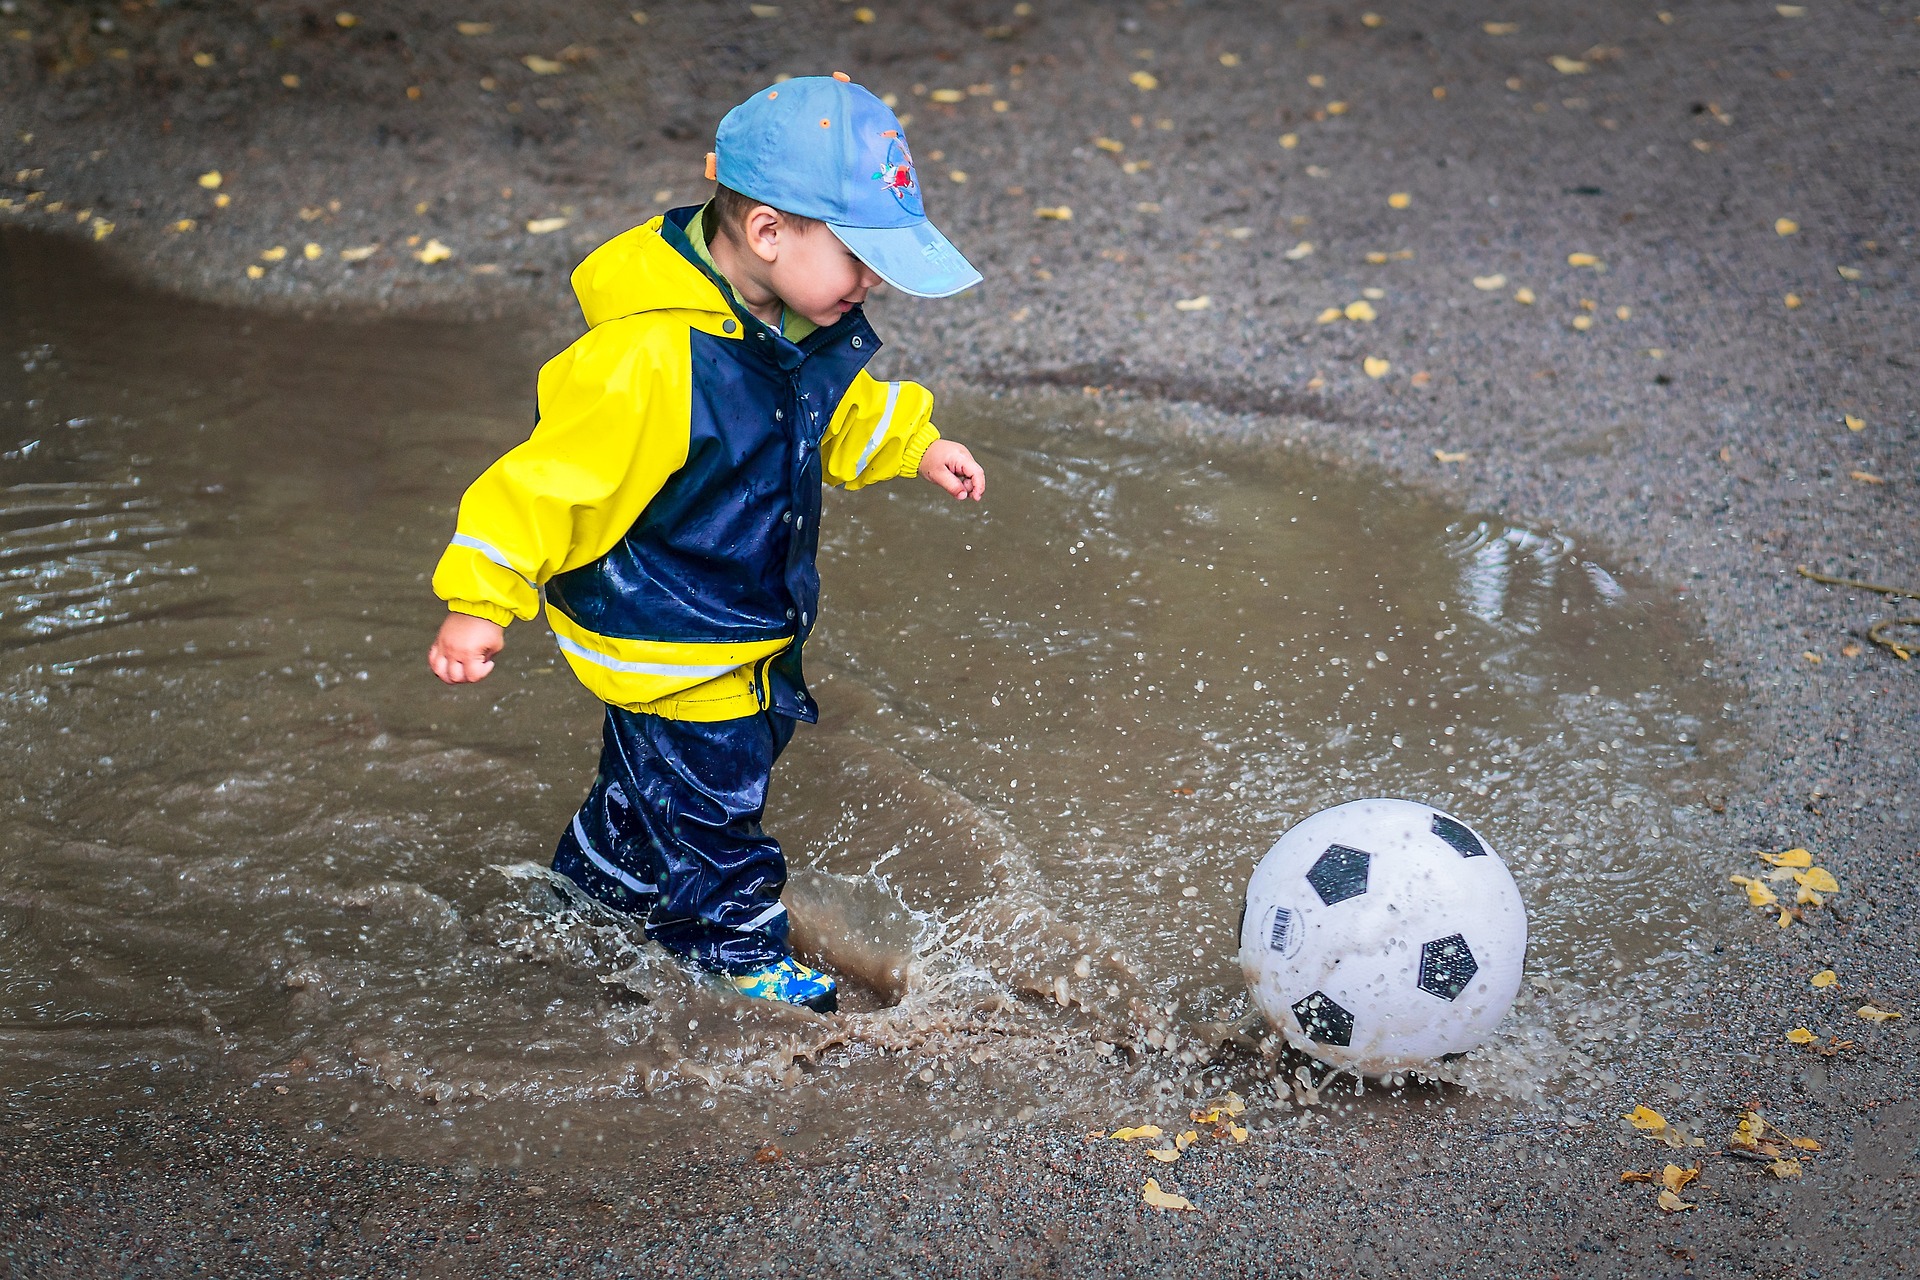 Dziecko przyszłym piłkarzem? Sprawdź jak uczyć gry w piłkę nożną